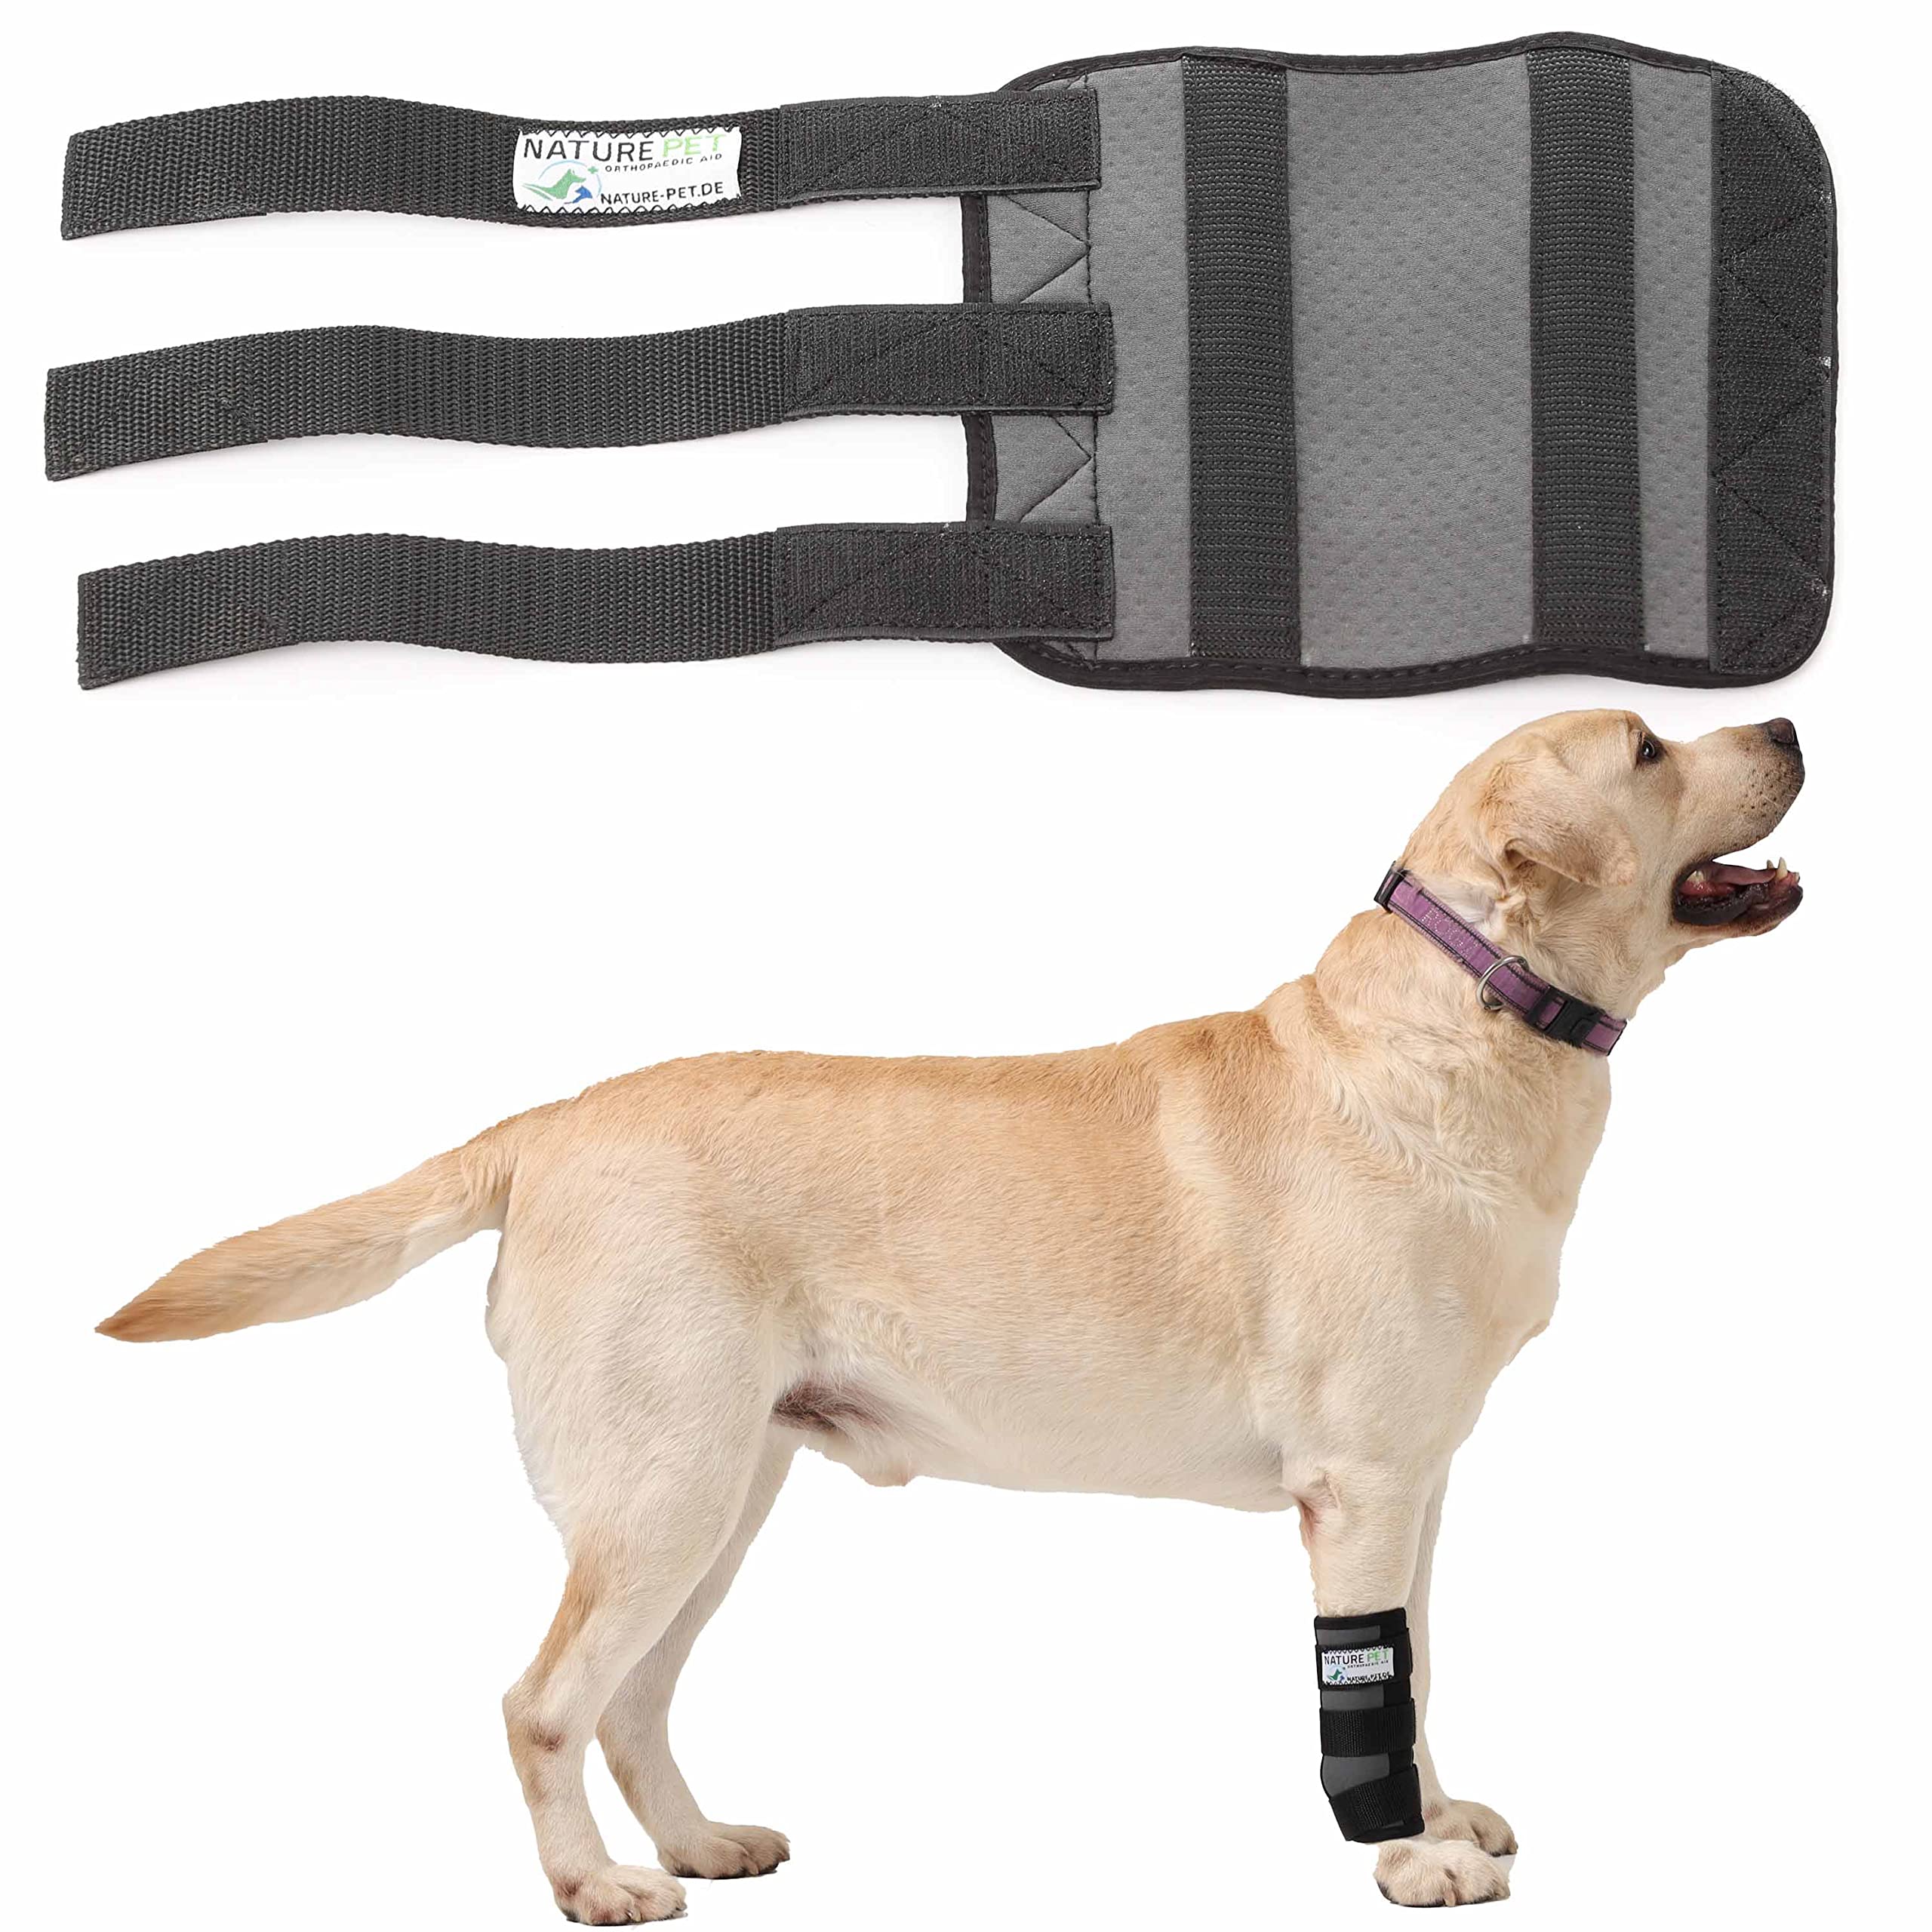 Nature Pet Sport Hand Gelenk Bandage für Hunde - geeignet für Rettungs- und Diensthunde oder Agility, Flyball und Hunde Frisbee (S)